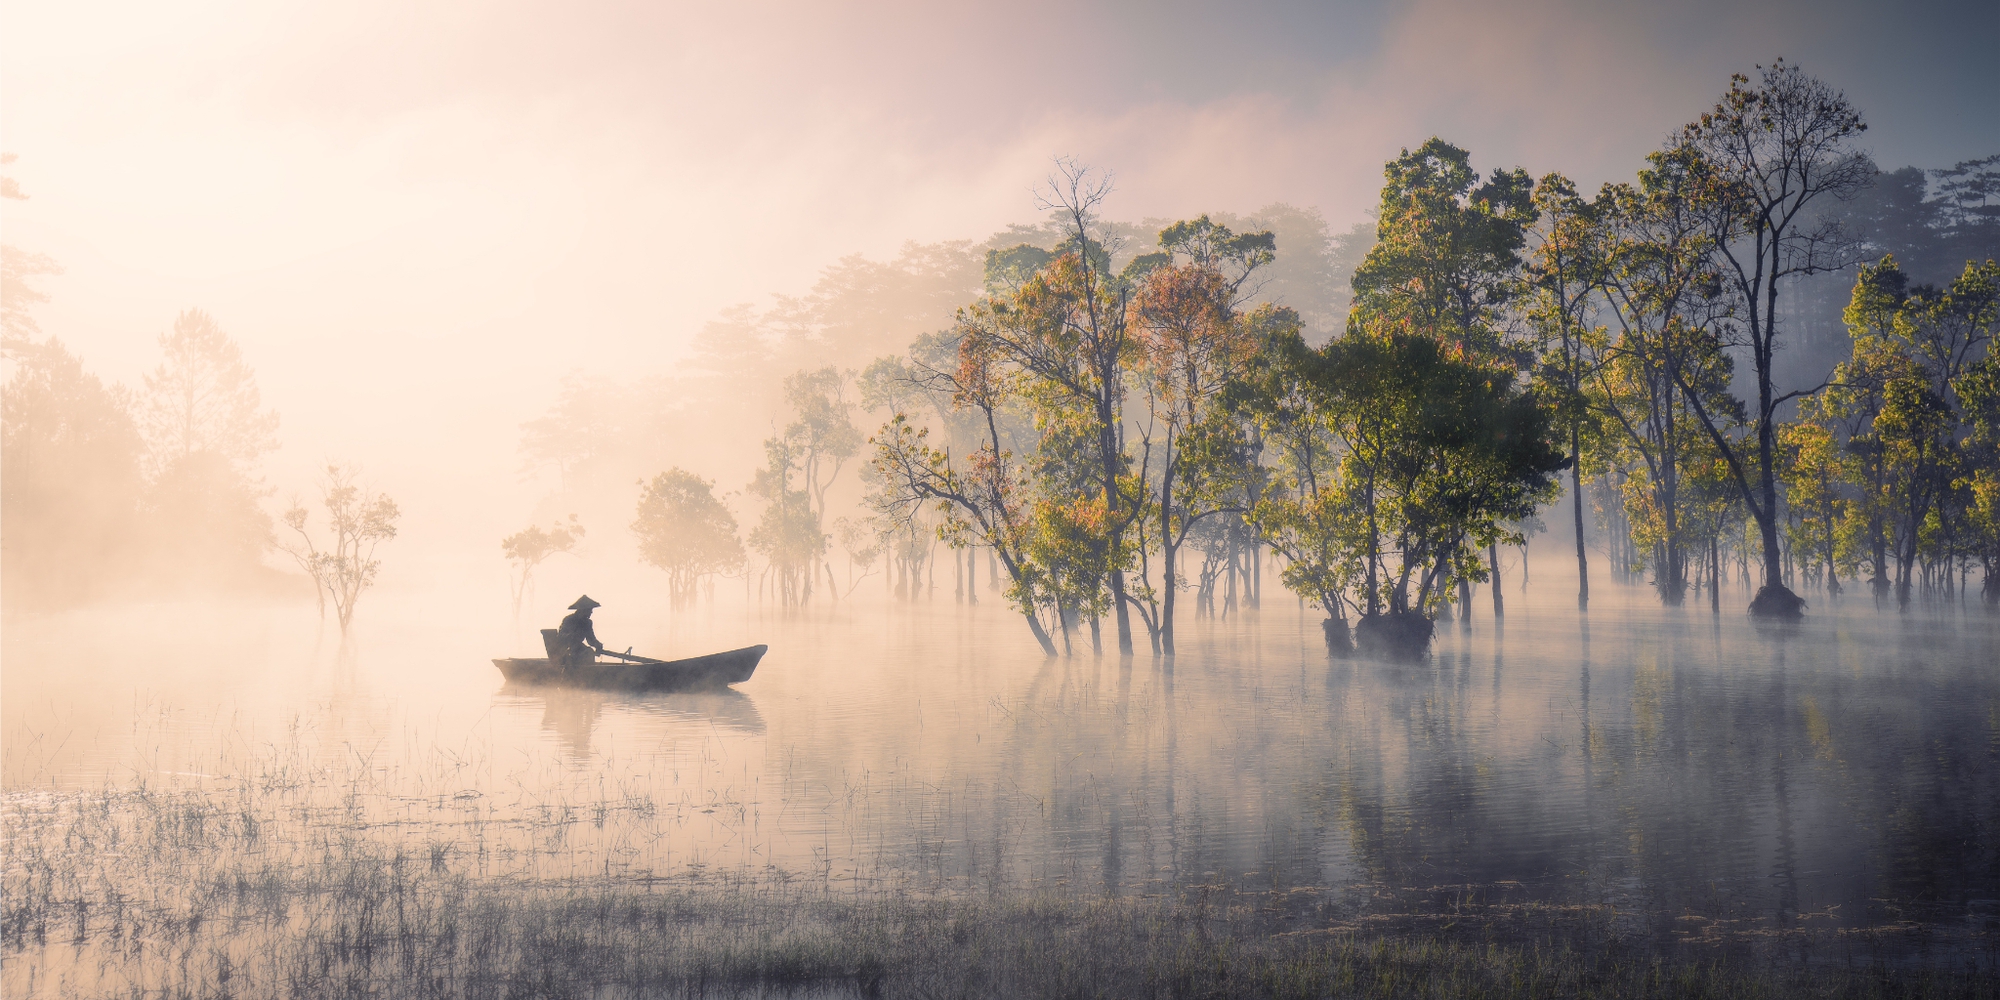  Nhiếp ảnh gia người Việt xuất sắc giành giải thưởng quốc tế khi săn ảnh cho vịt ăn  - Ảnh 6.